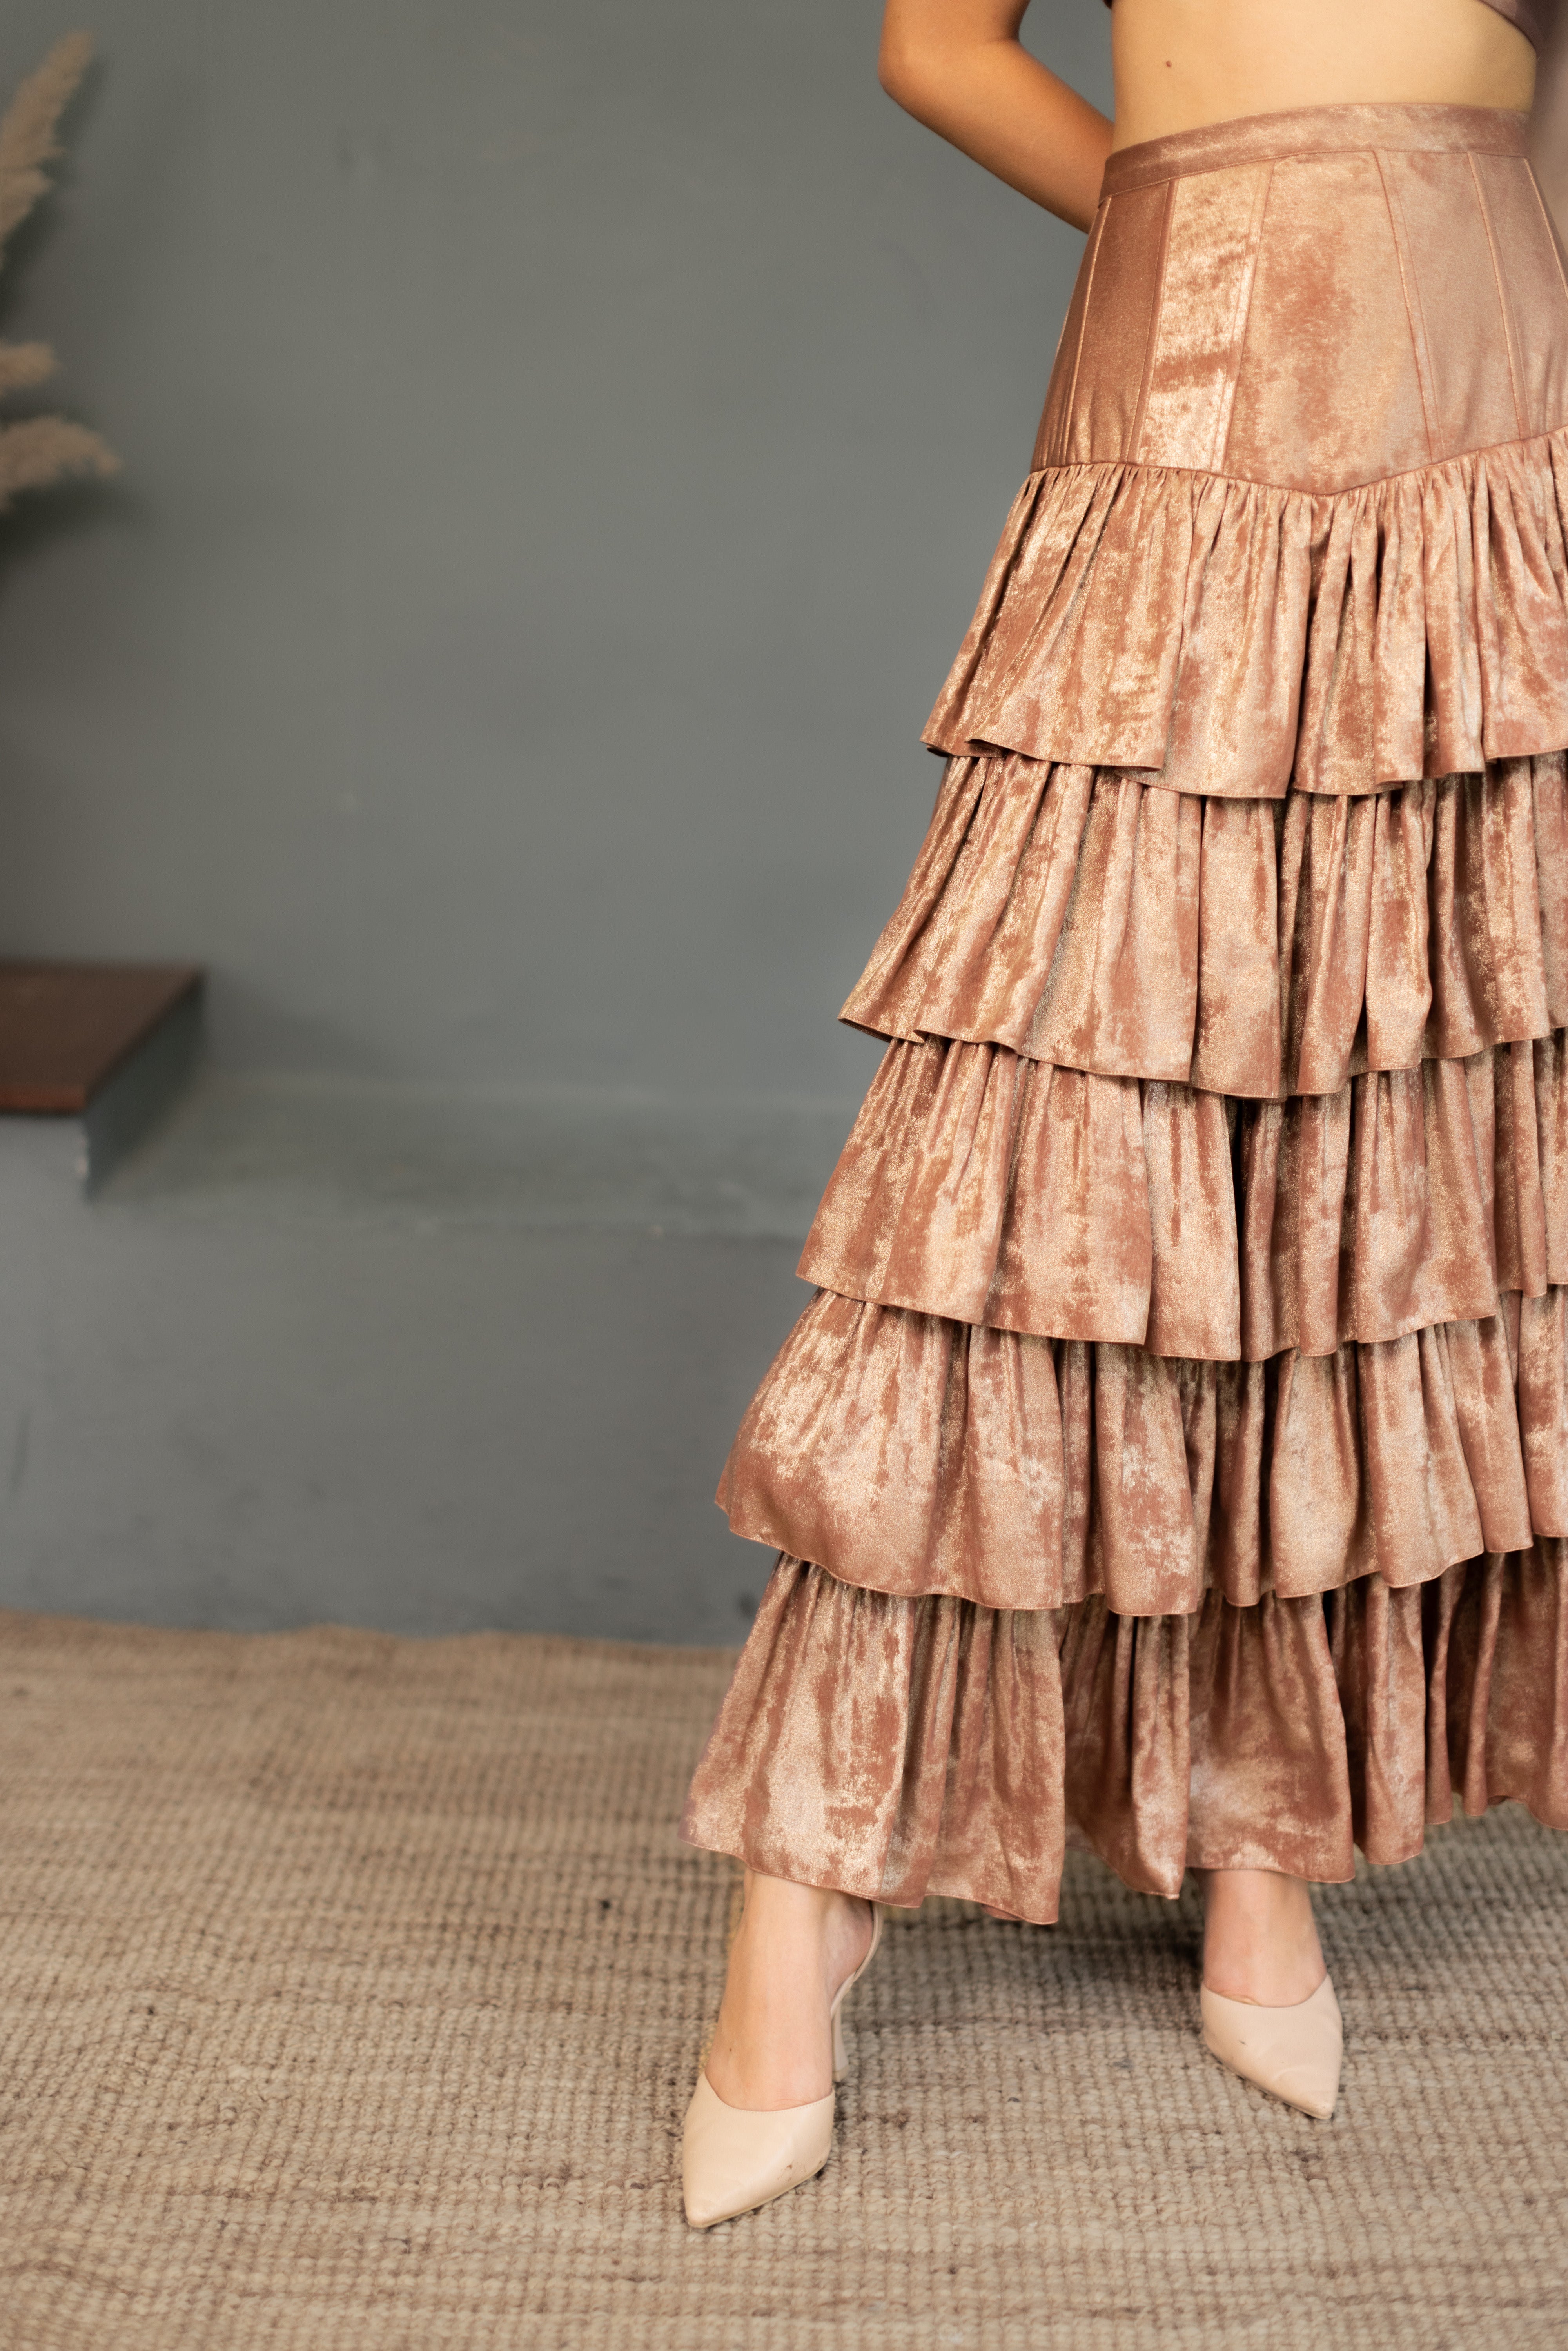 Leia Corset Skirt and Top set - Rose Gold